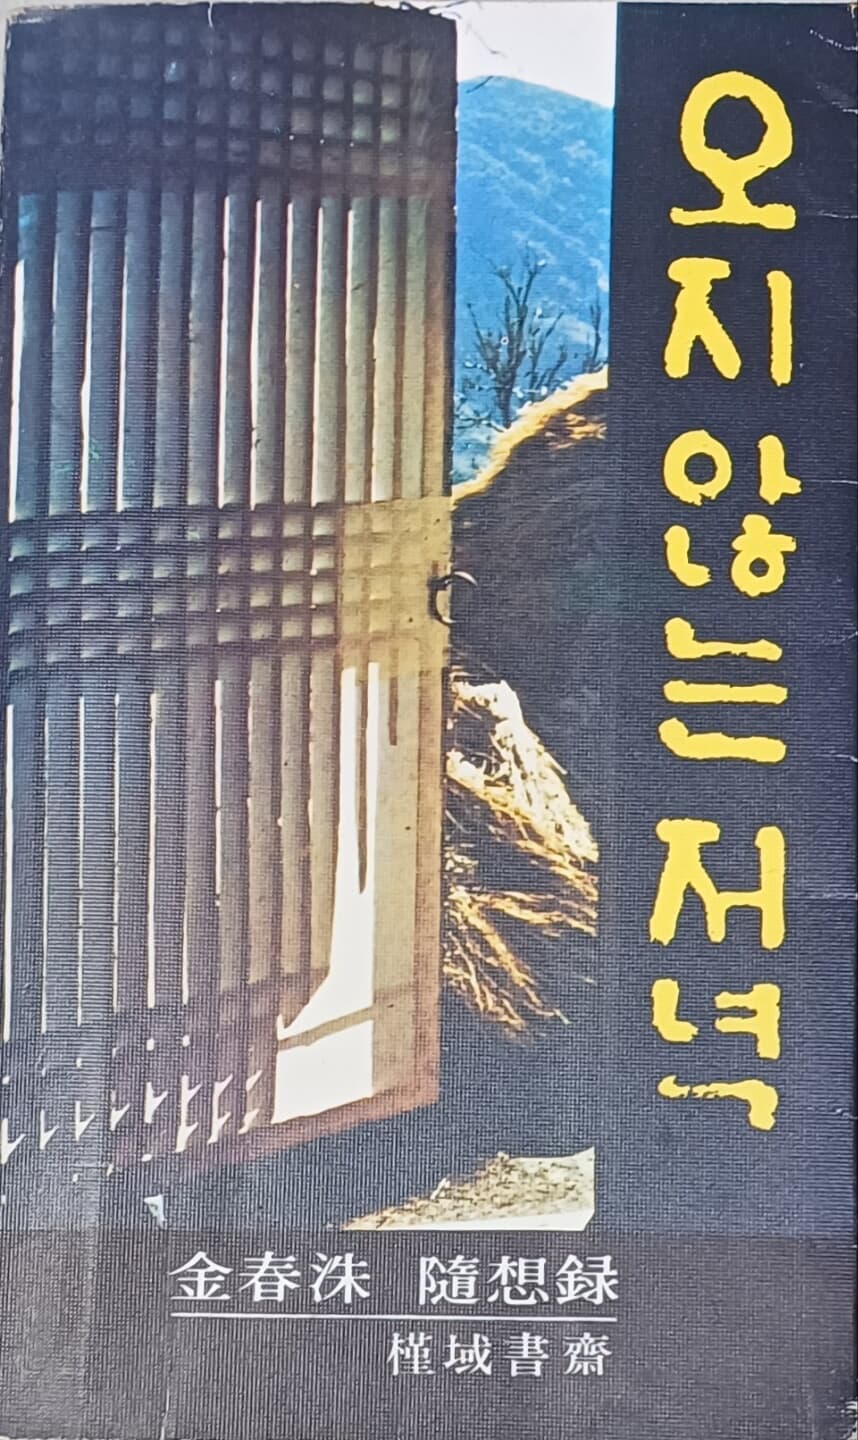 오지 않는 저녁 - 김춘수/근역서재/1979년(초판)/236쪽